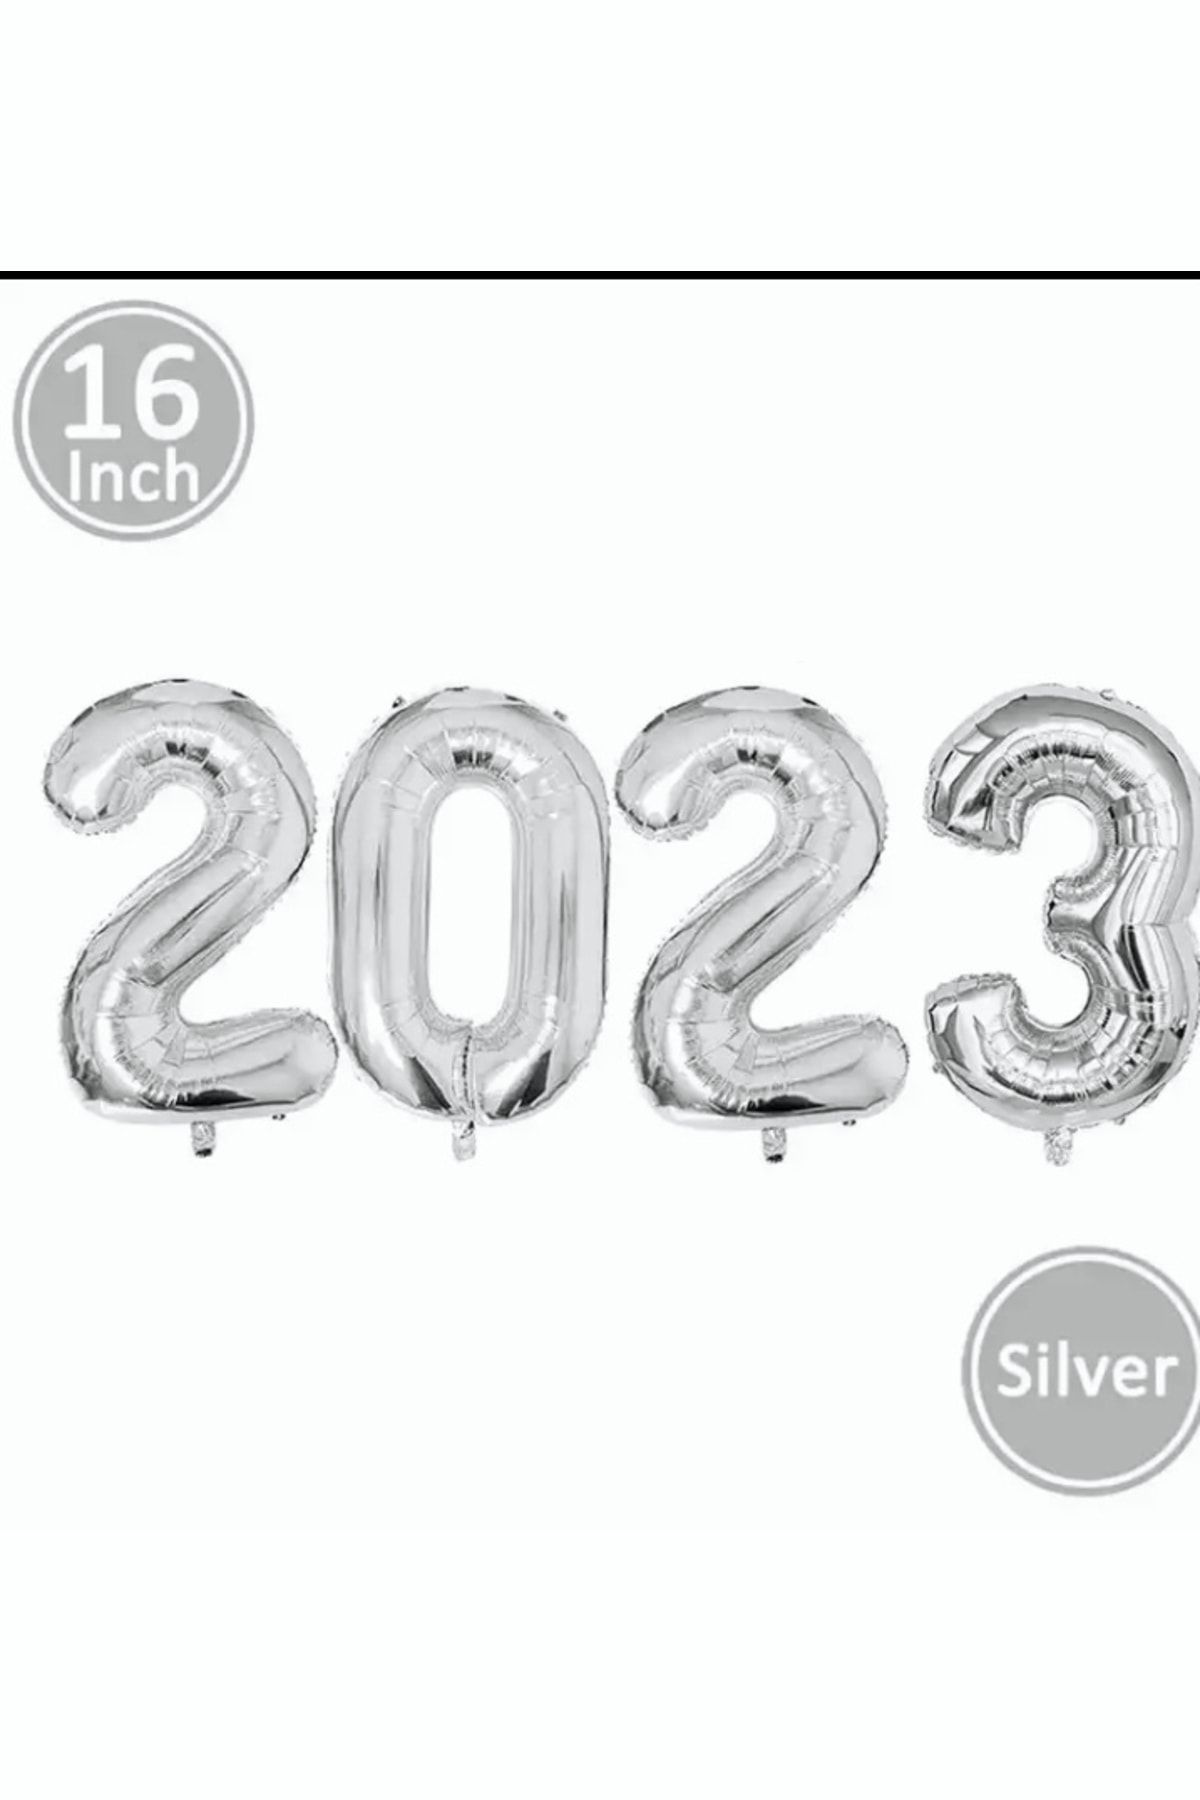 Deniz Party Store Yılbaşı 2023 Folyo Balon Her Rakam Boyutu ( 16 Inç ) 40 Cm Gümüş